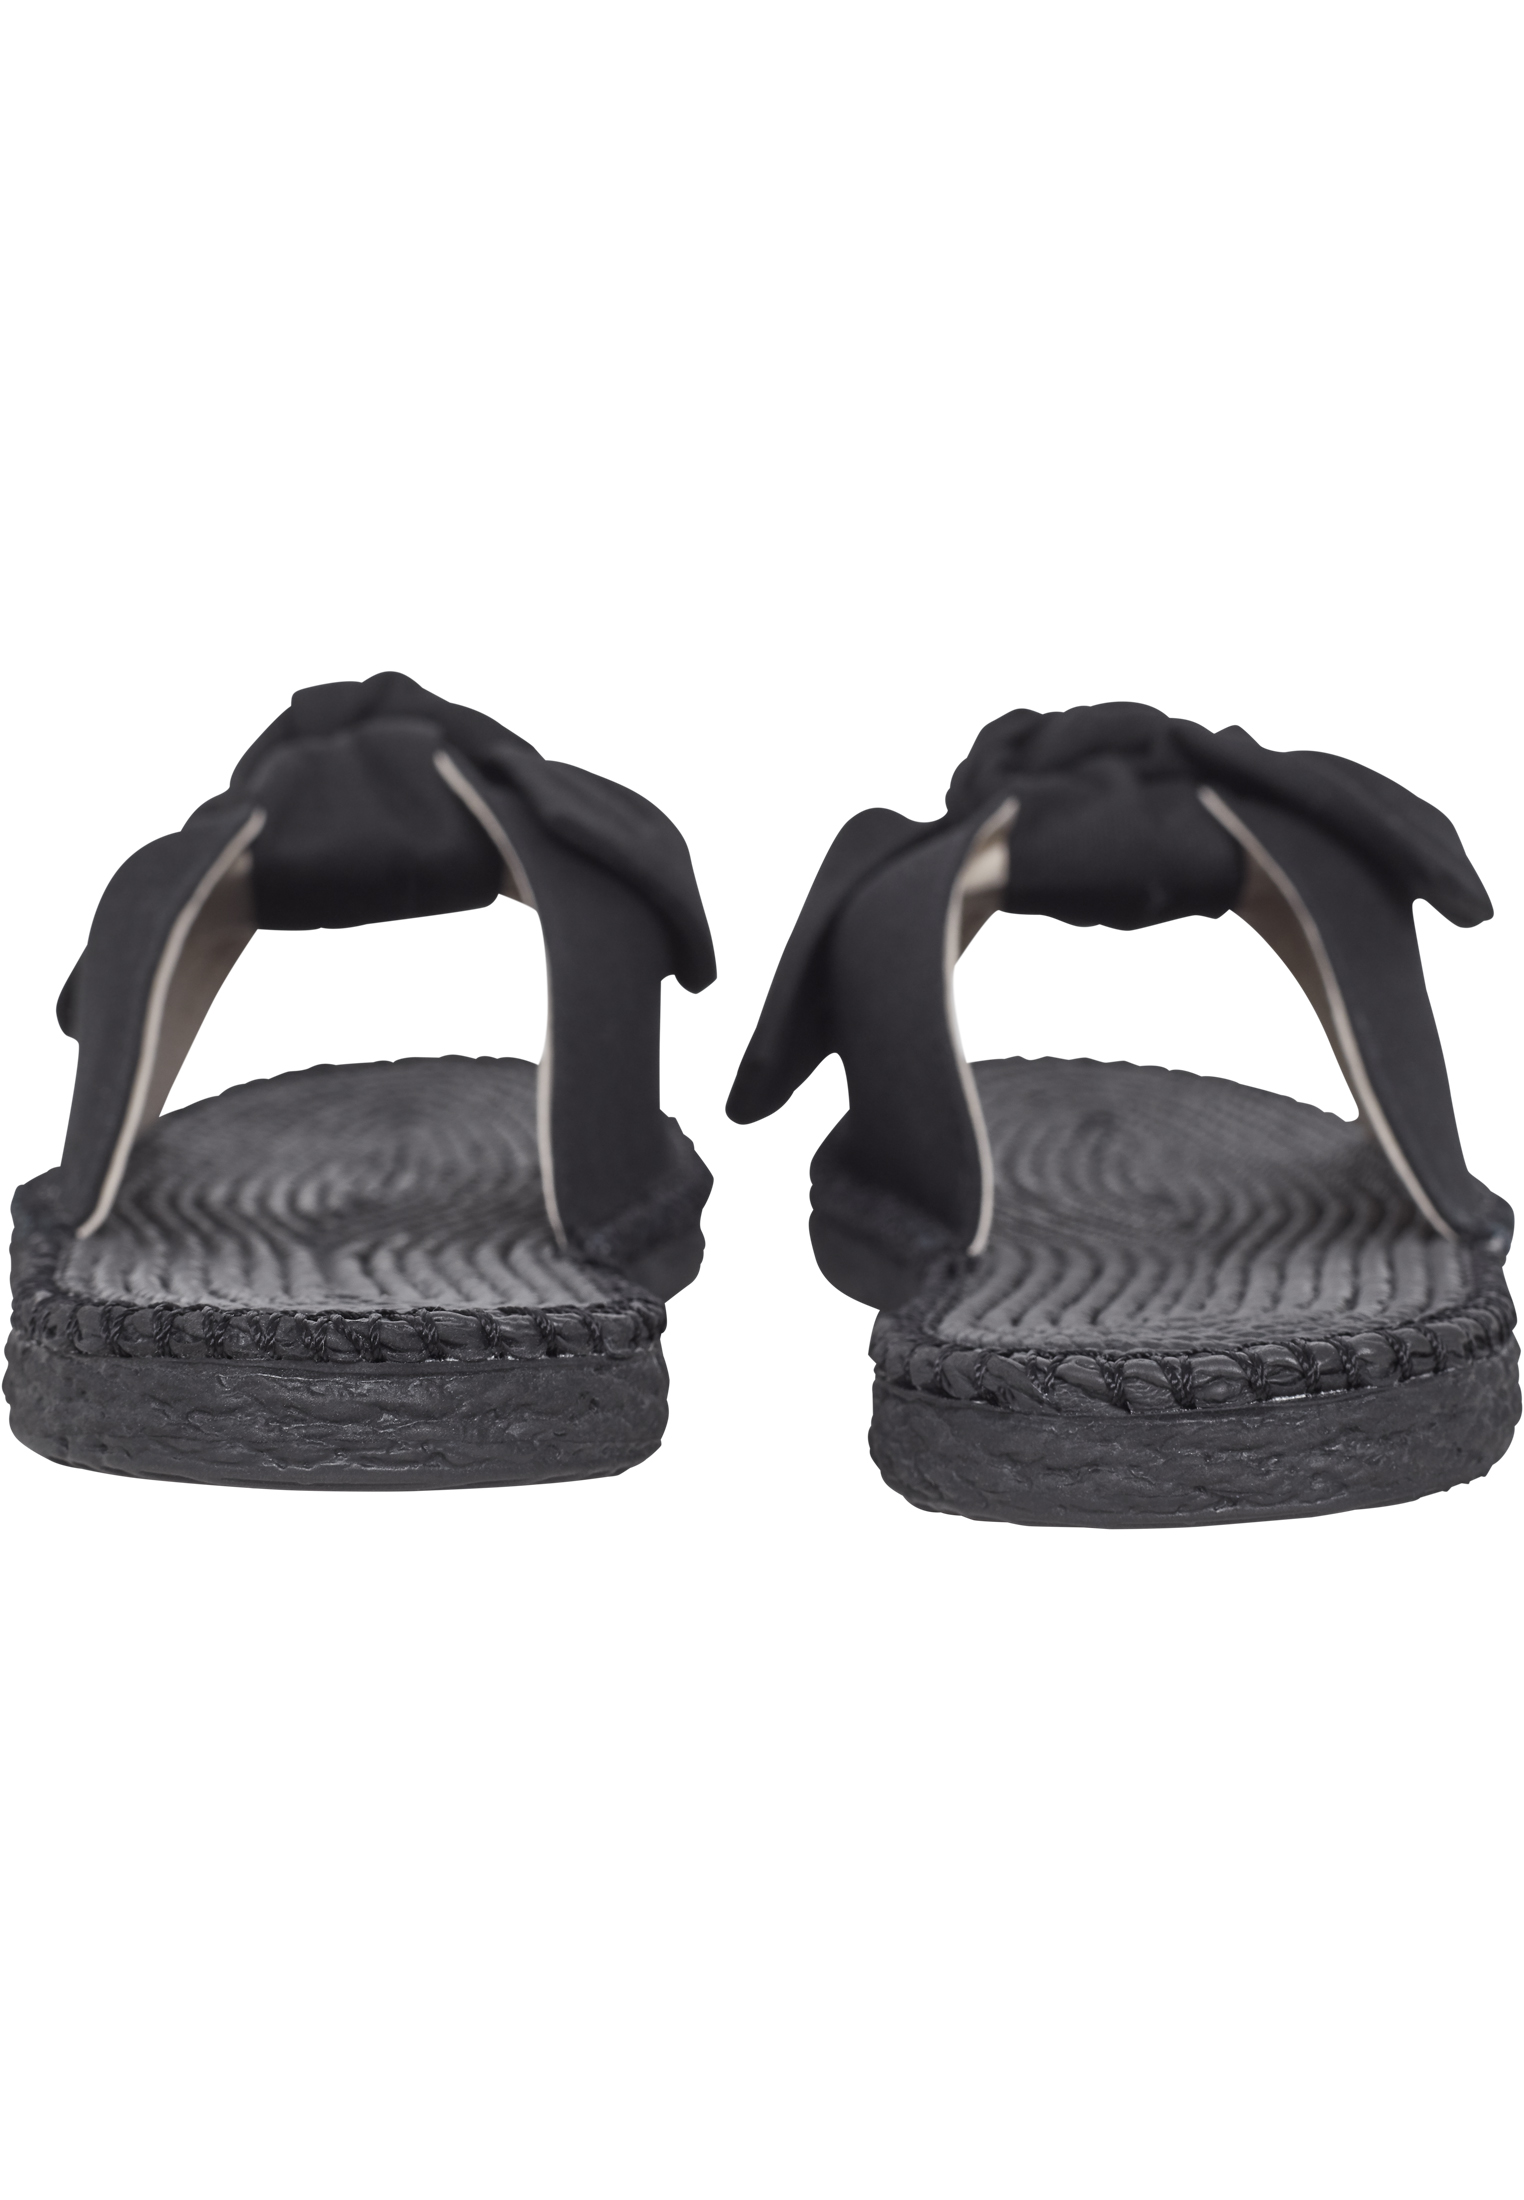 Schuhe Canvas Mules in Farbe black